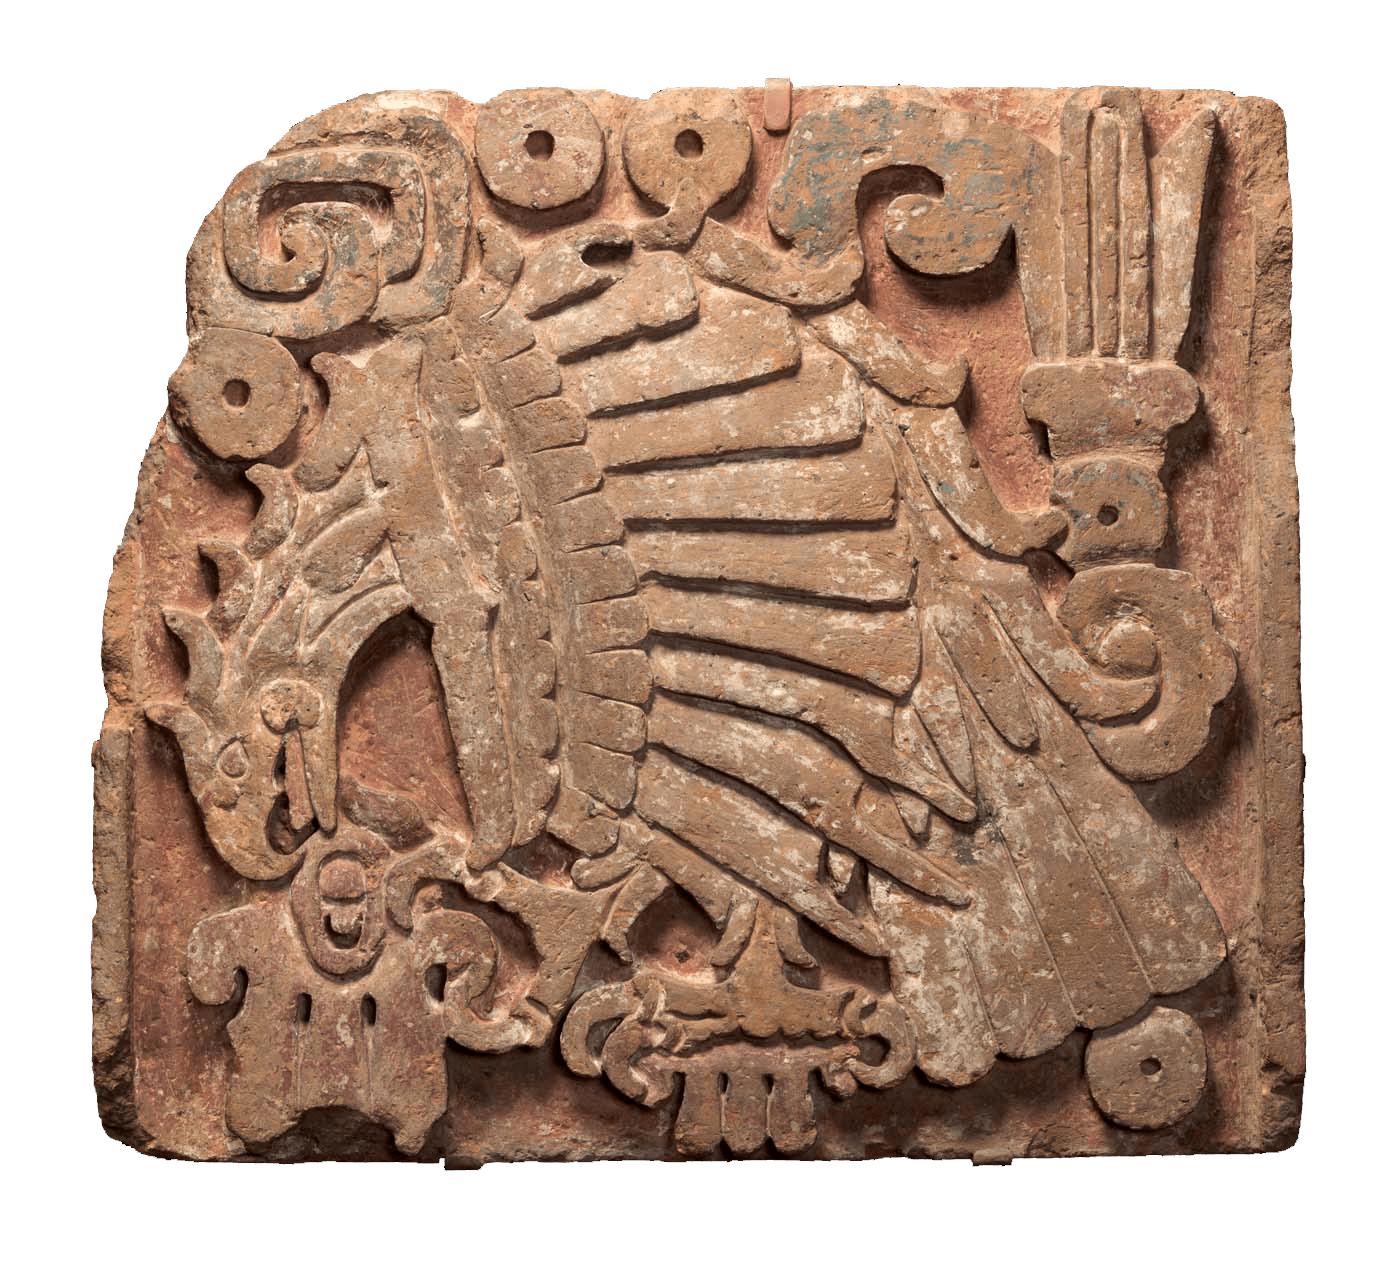 Steinrelief eines Adlers, der ein Herz verschlingt, aus Tula, Mexiko, 900 bis 1200 n. Chr. Das Foto zeigt ein nahezu quadratisches Flachrelief aus rotbraunem Stein. An einigen Stellen sind Spuren von blaugrauen und weißen Farbresten erkennbar. Fast der gesamte Raum des Reliefs ist von der Darstellung eines Adlers in Seitenansicht ausgefüllt. Die Flügel des Vogels sind angelegt, der Kopf weist in die linke untere Ecke. Kopf, Hals und Rücken bilden einen Bogen, der von den nach unten hängenden Schwanzfedern bis in die rechte untere Ecke fortgesetzt wird. Die Krallen des linken Fußes umschließen einen Stab, der von unten ins Bild ragt. Mit den Krallen des rechten Fußes hält der Adler ein rundliches spiegelsymetrisches Gebilde mit Ausbuchtungen, das von der Forschung als menschliches Herz beschrieben wird. Es wird vom oberen Teil des geöffneten Schnabels berührt. Der Schnabel ist sichelförmig gebogen, im Mundraum ist die Zunge sichtbar. Das Federkleid ist vereinfacht dargestellt. Der Flügel erinnert an einen geöffneten Fächer. Die Deckfedern verlaufen in drei schmalen Bahnen von oben nach unten. Der Raum oberhalb des Adlers ist mit Ornamenten ausgefüllt. Darunter sind kreisförmige Gebilde mit einem Loch im Zentrum und doppelt gerahmte Rechtecke. Ein weiteres kreisförmiges Ornament mit Loch befindet sich in der rechten unteren Ecke. Das Relief war Teil eines großen Ornamentbandes. Es verlief um die Stufen einer Pyramide, die sich im Zentrum Tulas befand, in einem Bezirk, der für zeremonielle Zwecke genutzt wurde. — — Stone Relief of an Eagle Devouring a Heart from Tula, Mexico, 900 to 1200 AD The photo shows a nearly square bas-relief made of reddish-brown stone. Traces of blue-grey and white paint residues are visible in some places. Almost the entire space of the relief is filled by the depiction of an eagle viewed from the side. The wings of the bird are laid out, the head points to the lower left corner. The head, neck and back form an arch which is continued by the tail feathers hanging downwards to the bottom right corner. The claws of the left foot clasp a staff that protrudes into the picture from below. With the claws of the right foot, the eagle holds a round mirror-symmetrical structure with bulges, described by researchers as a human heart. It is touched by the upper part of the open beak. The beak is curved in a sickle shape, and the tongue is visible in the mouth area. The plumage is simplified. The wing resembles an open fan. The coverts (top feathers) run in three narrow courses from top to bottom. The space above the eagle is filled with ornaments. Below are circular structures with a hole in the centre and double-framed rectangles. Another circular ornament with a hole is in the lower right corner. The relief was part of a large ornamental band. It ran around the steps of a pyramid located in the centre of Tula, in a district used for ceremonial purposes.